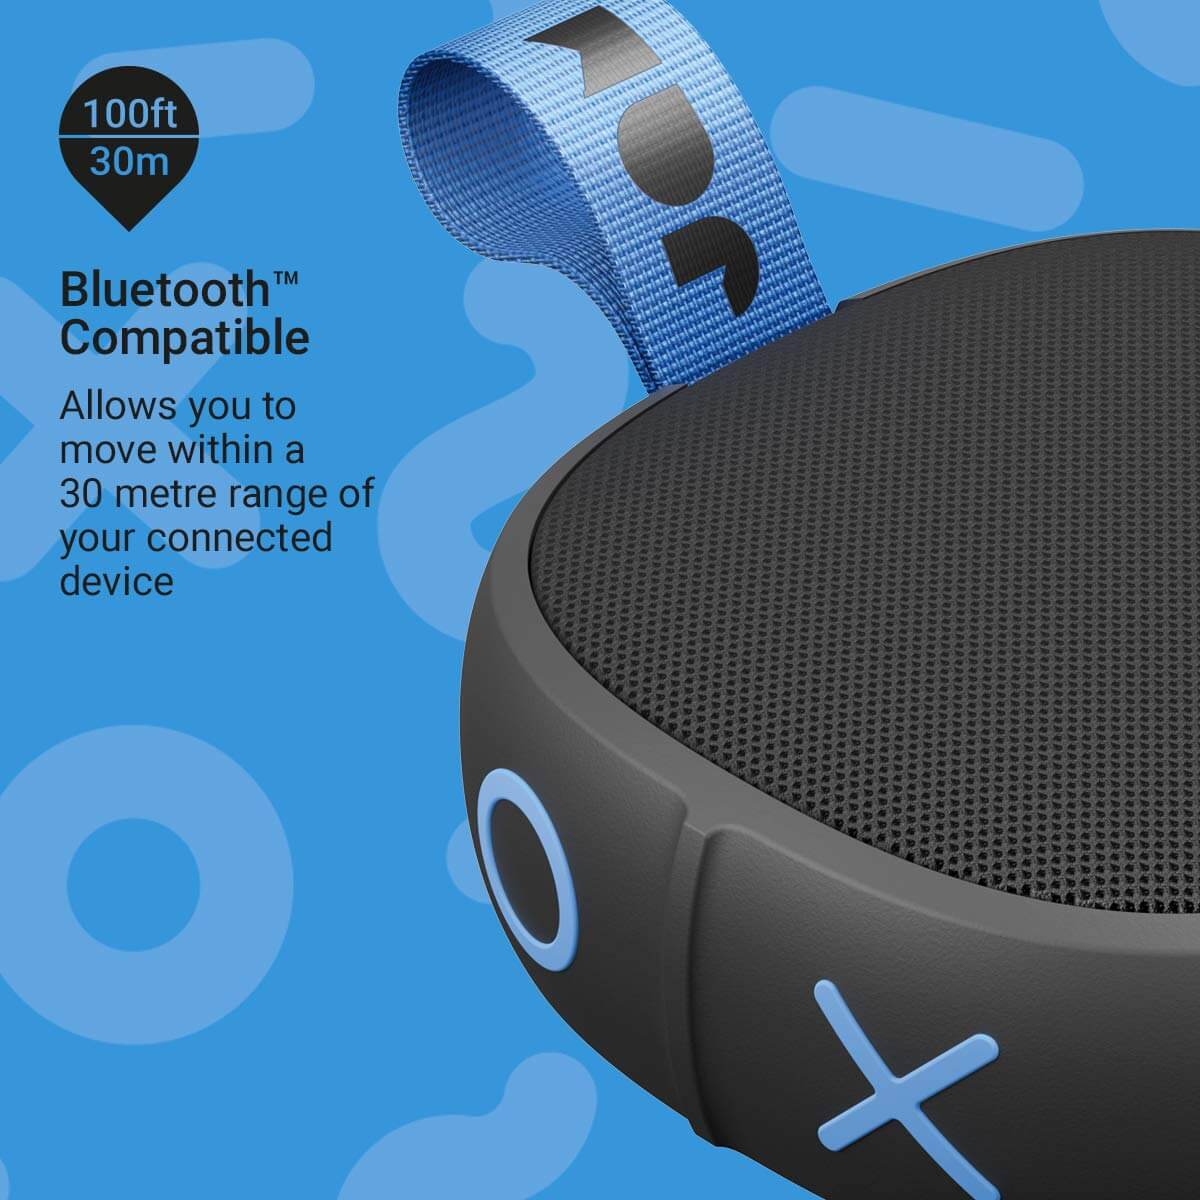 BEST Bluetooth SHOWER SPEAKER